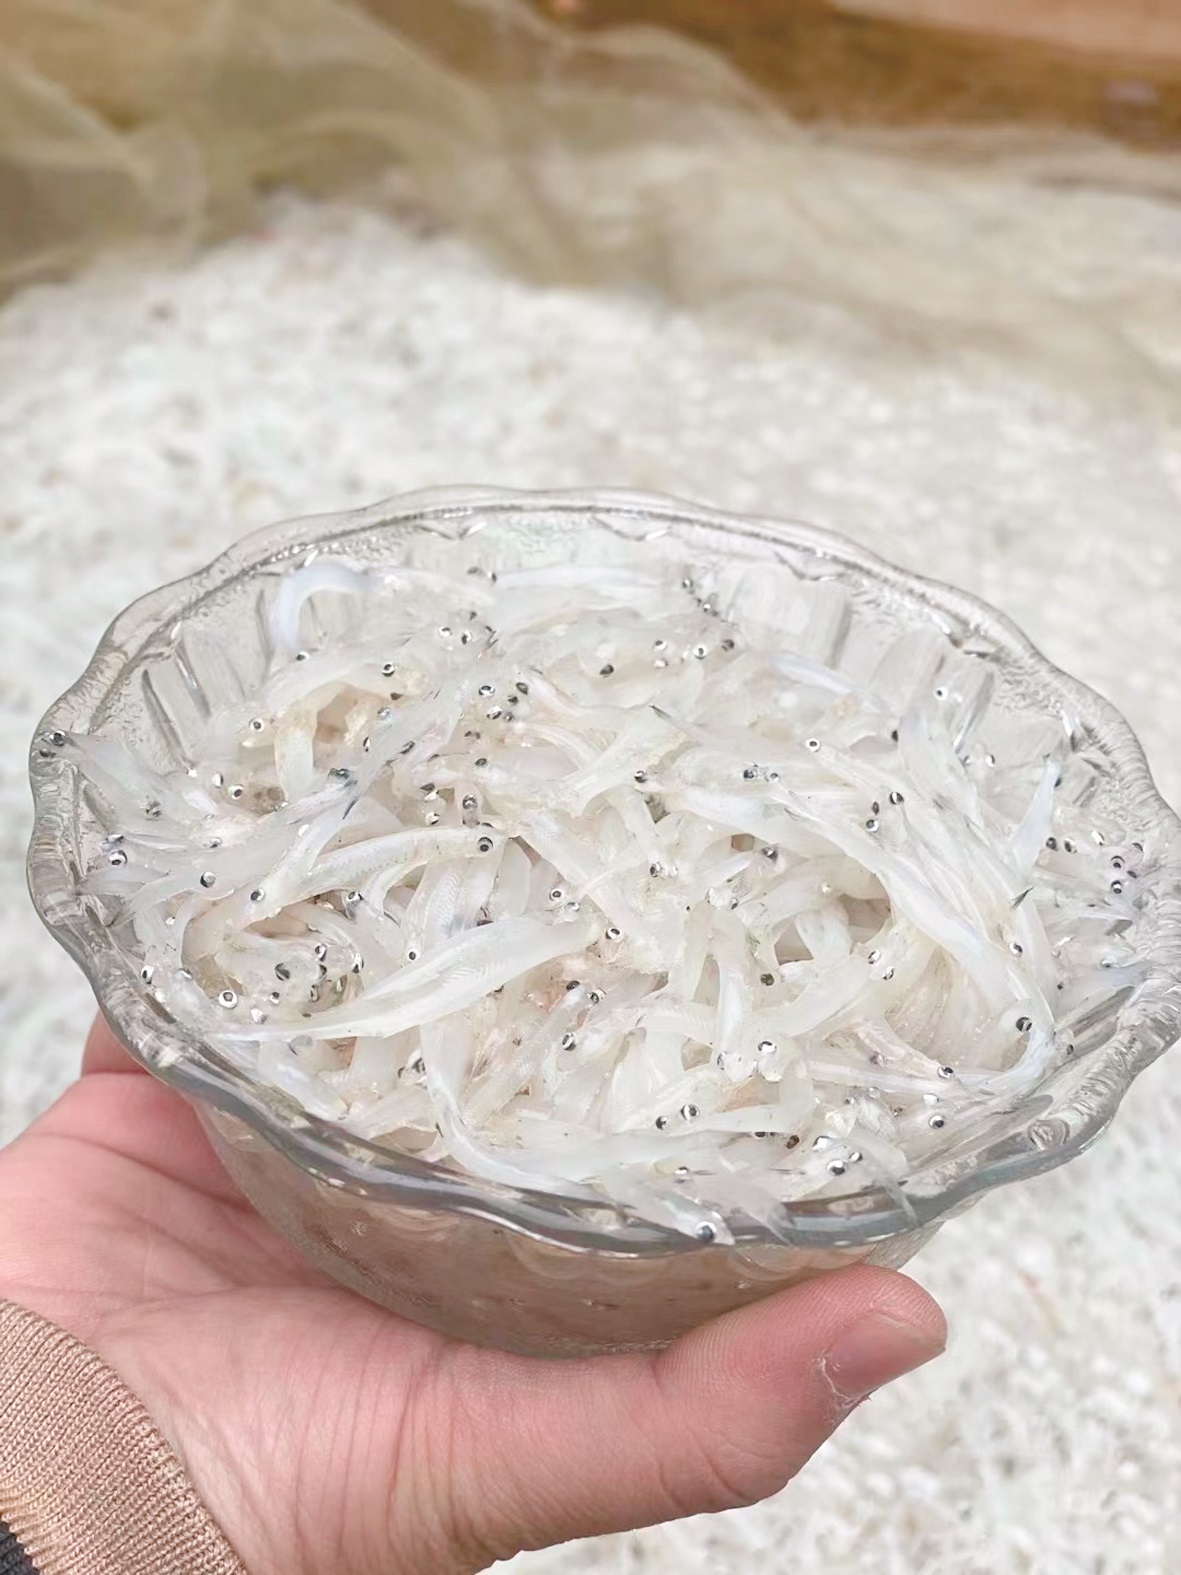 鄱阳湖银鱼-名特食品图谱-图片